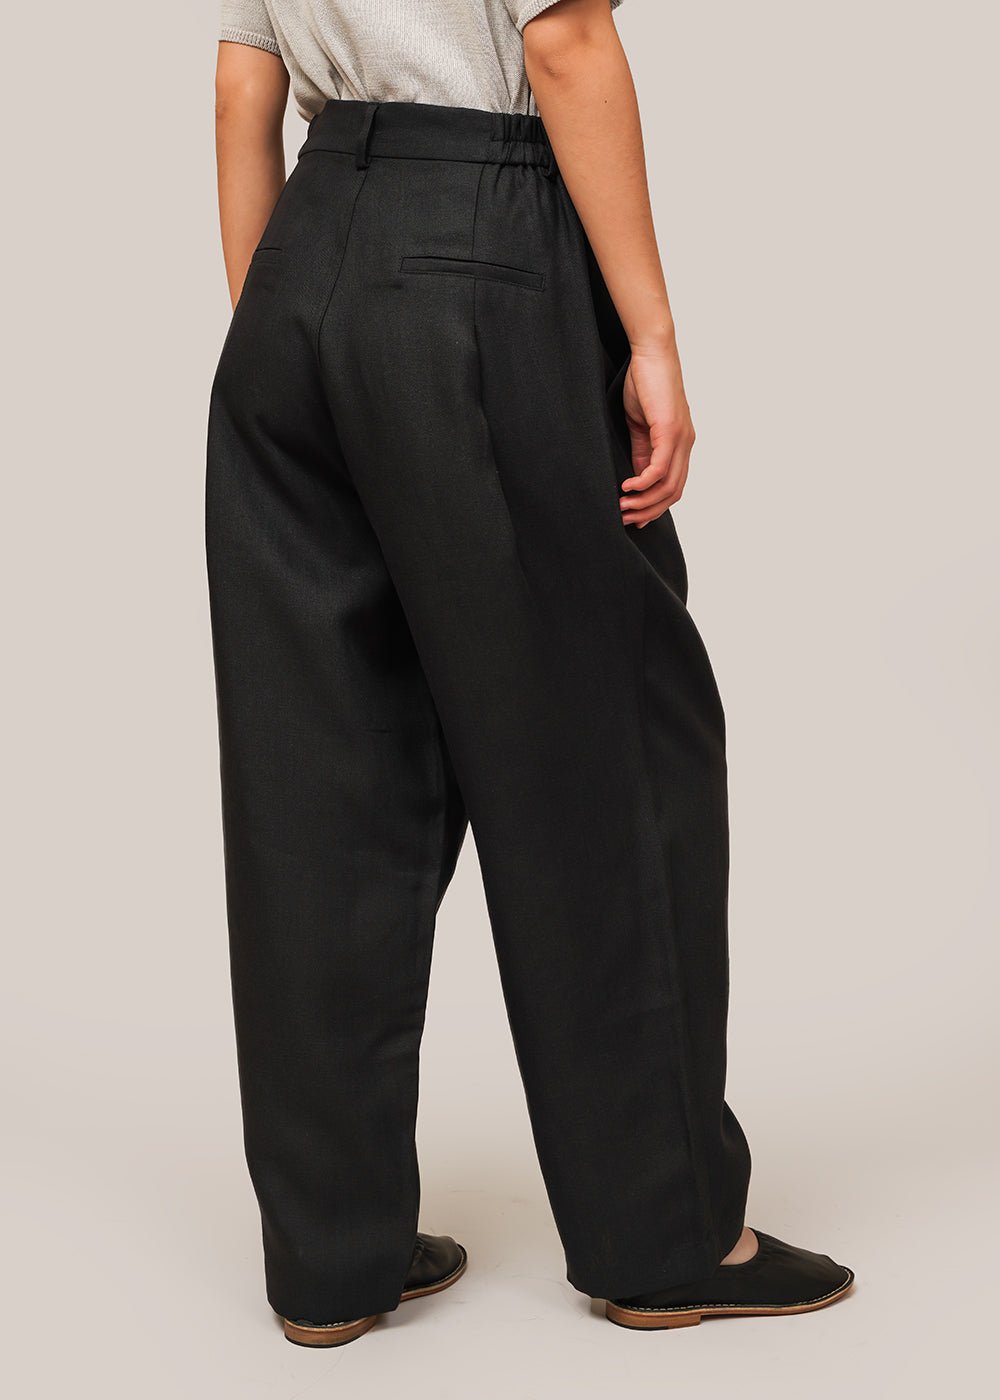 Soft Surroundings Solid Black Linen Pants Size M (Petite) - 70% off